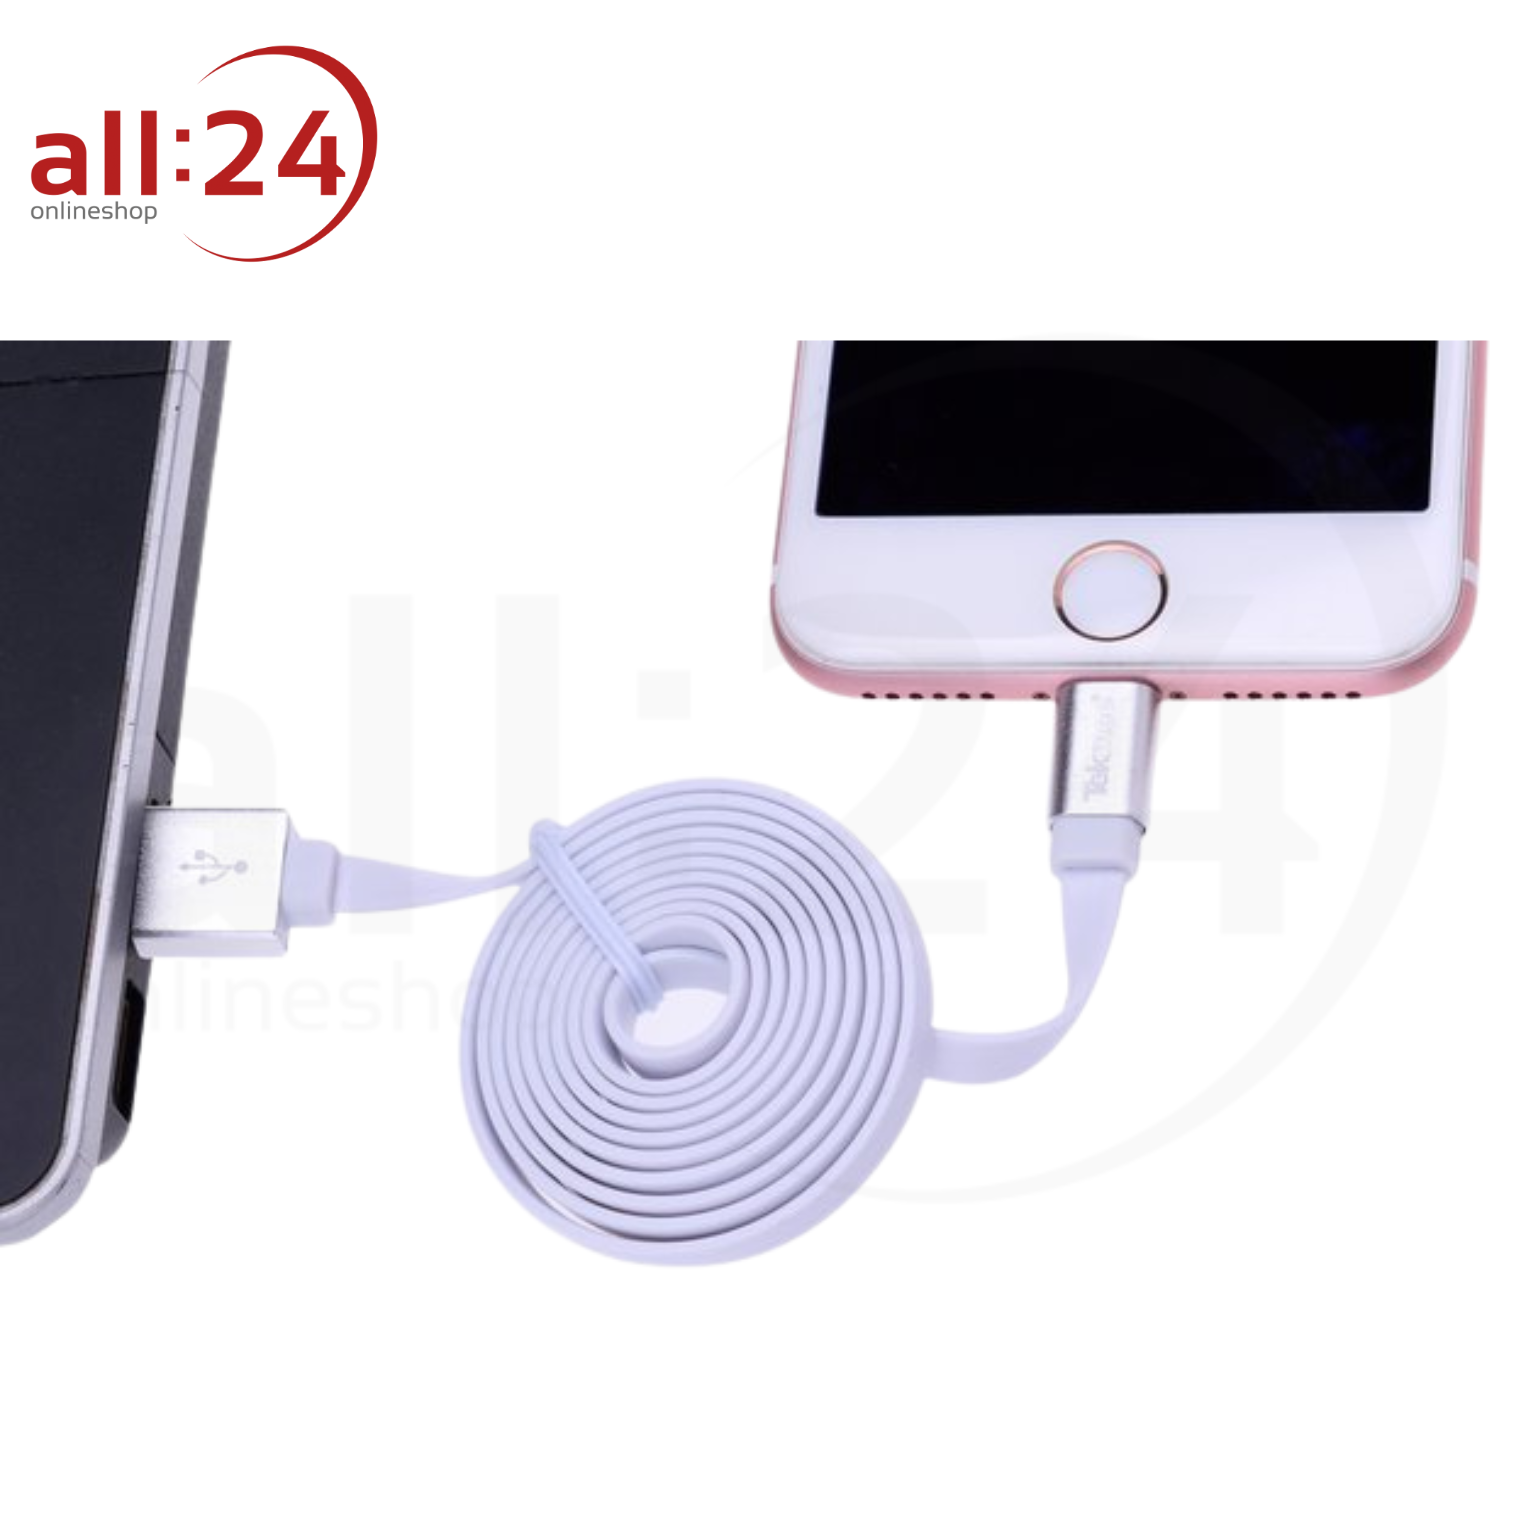 Tekmee iPhone Ladekabel - Weiß, 1m, 2.4A 